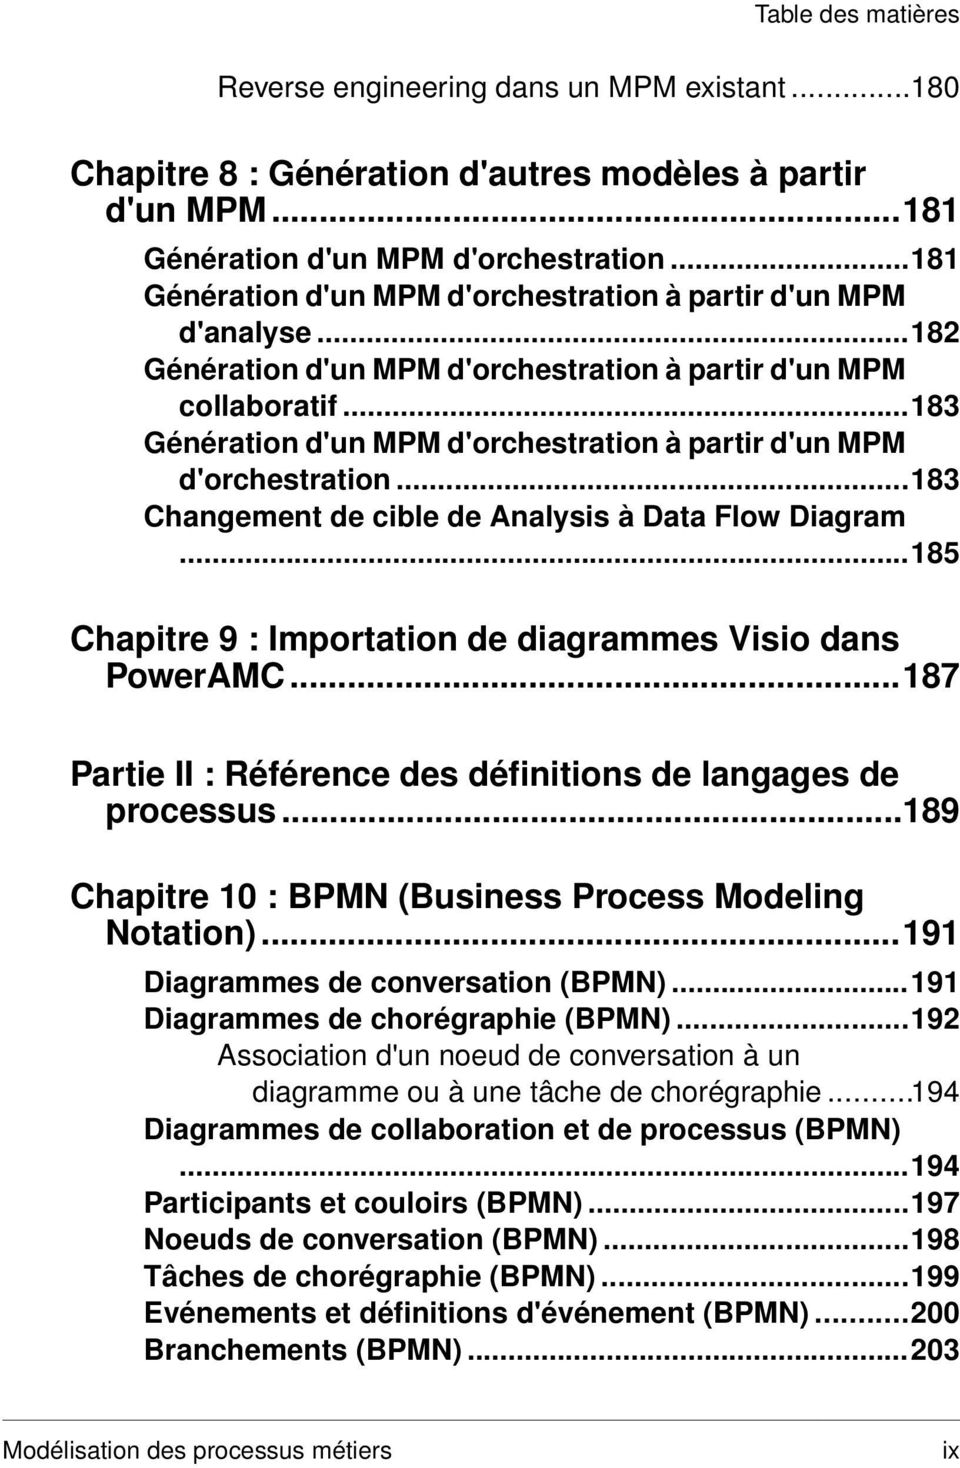 ..183 Génération d'un MPM d'orchestration à partir d'un MPM d'orchestration...183 Changement de cible de Analysis à Data Flow Diagram...185 Chapitre 9 : Importation de diagrammes Visio dans PowerAMC.